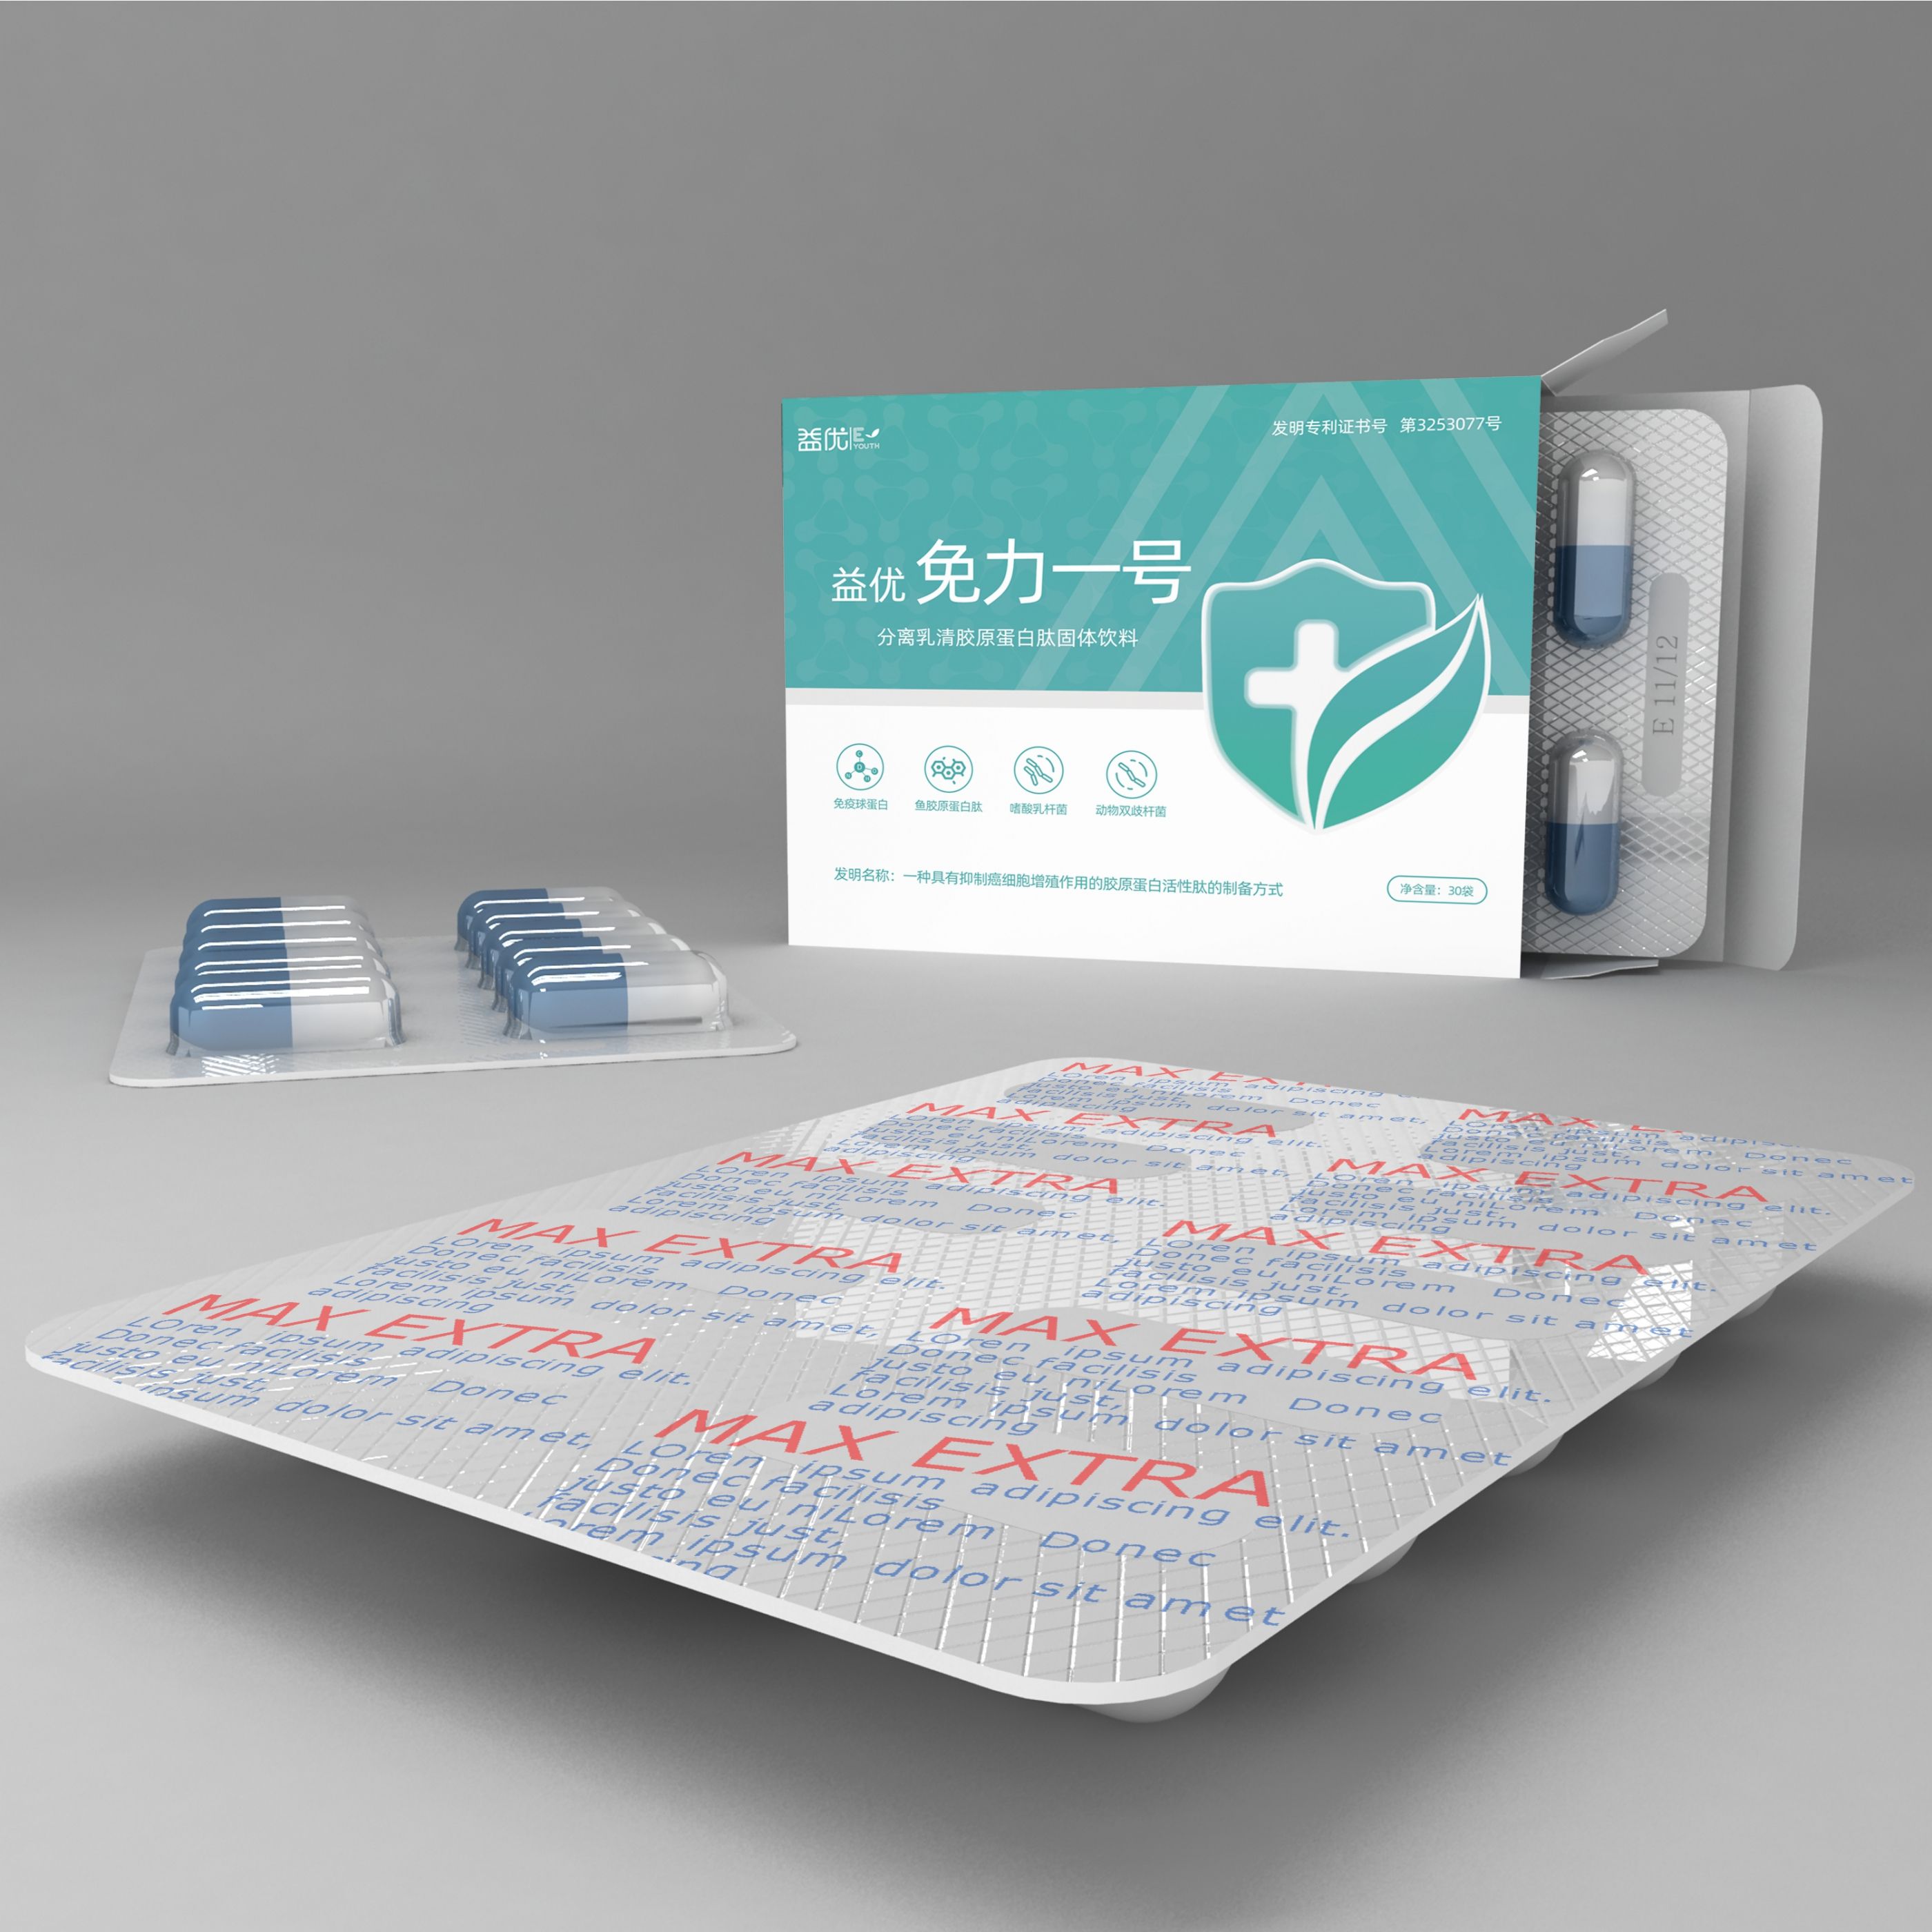 药品外盒包装设计 飞特网 原创药品包装设计